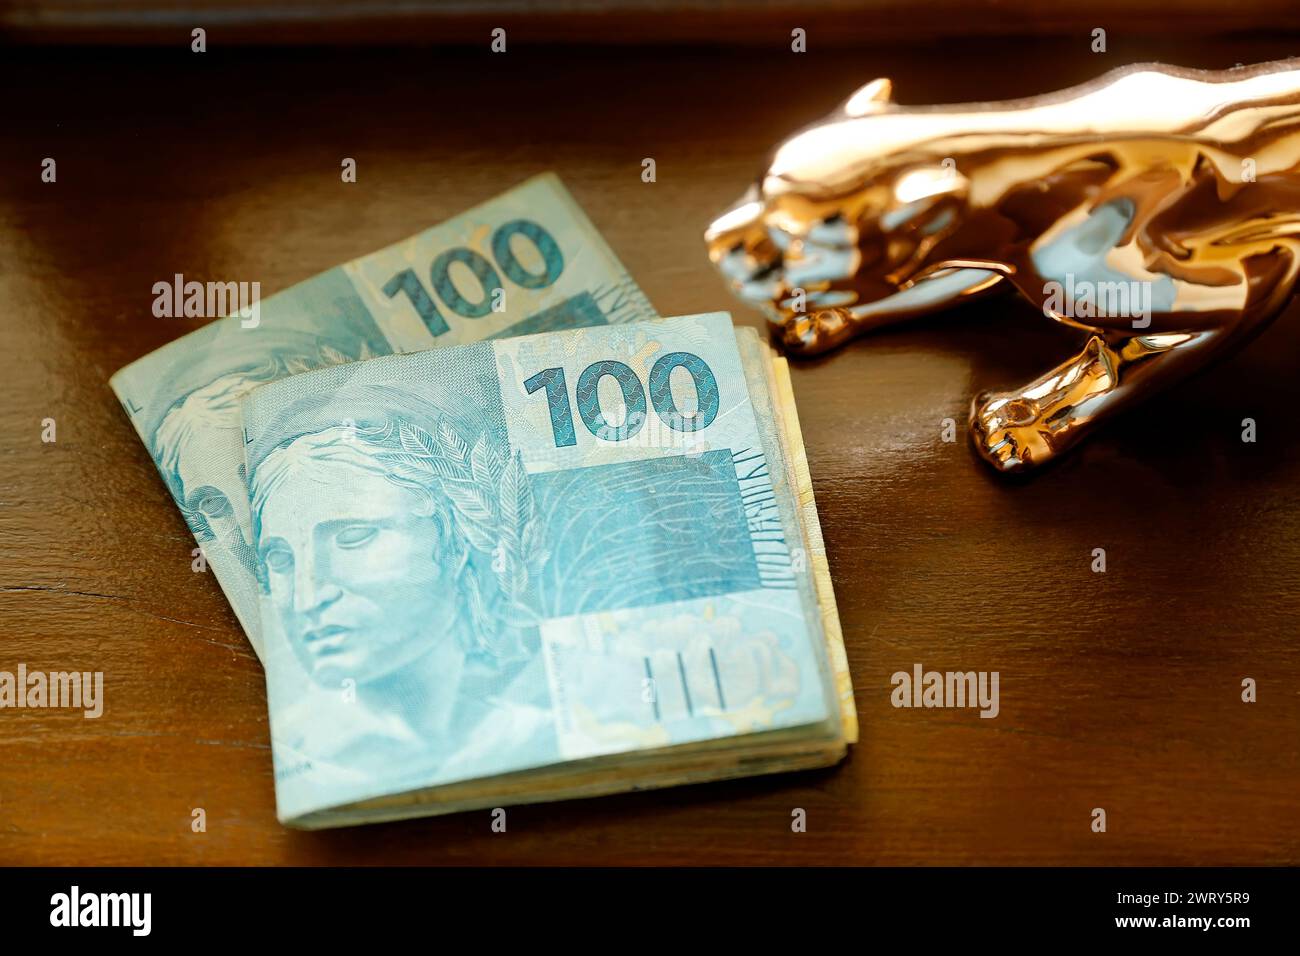 Détail de plusieurs billets de banque utilisés au Brésil - plusieurs centaines de reais en billets de banque Banque D'Images